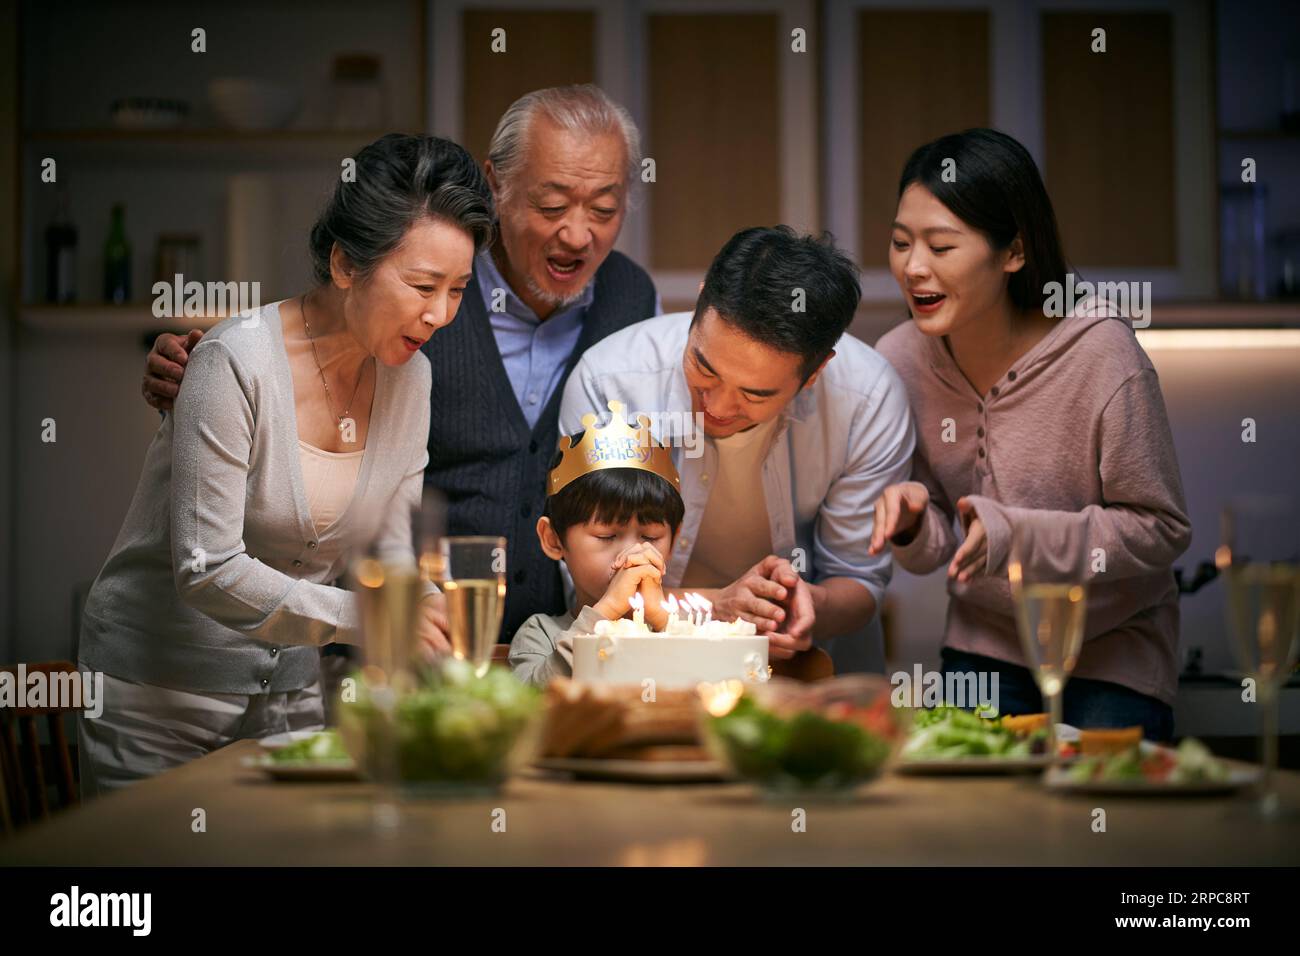 Ein kleiner asiatischer Junge, der sich wünscht, während die Familie in drei Generationen zu Hause seinen Geburtstag feiert Stockfoto